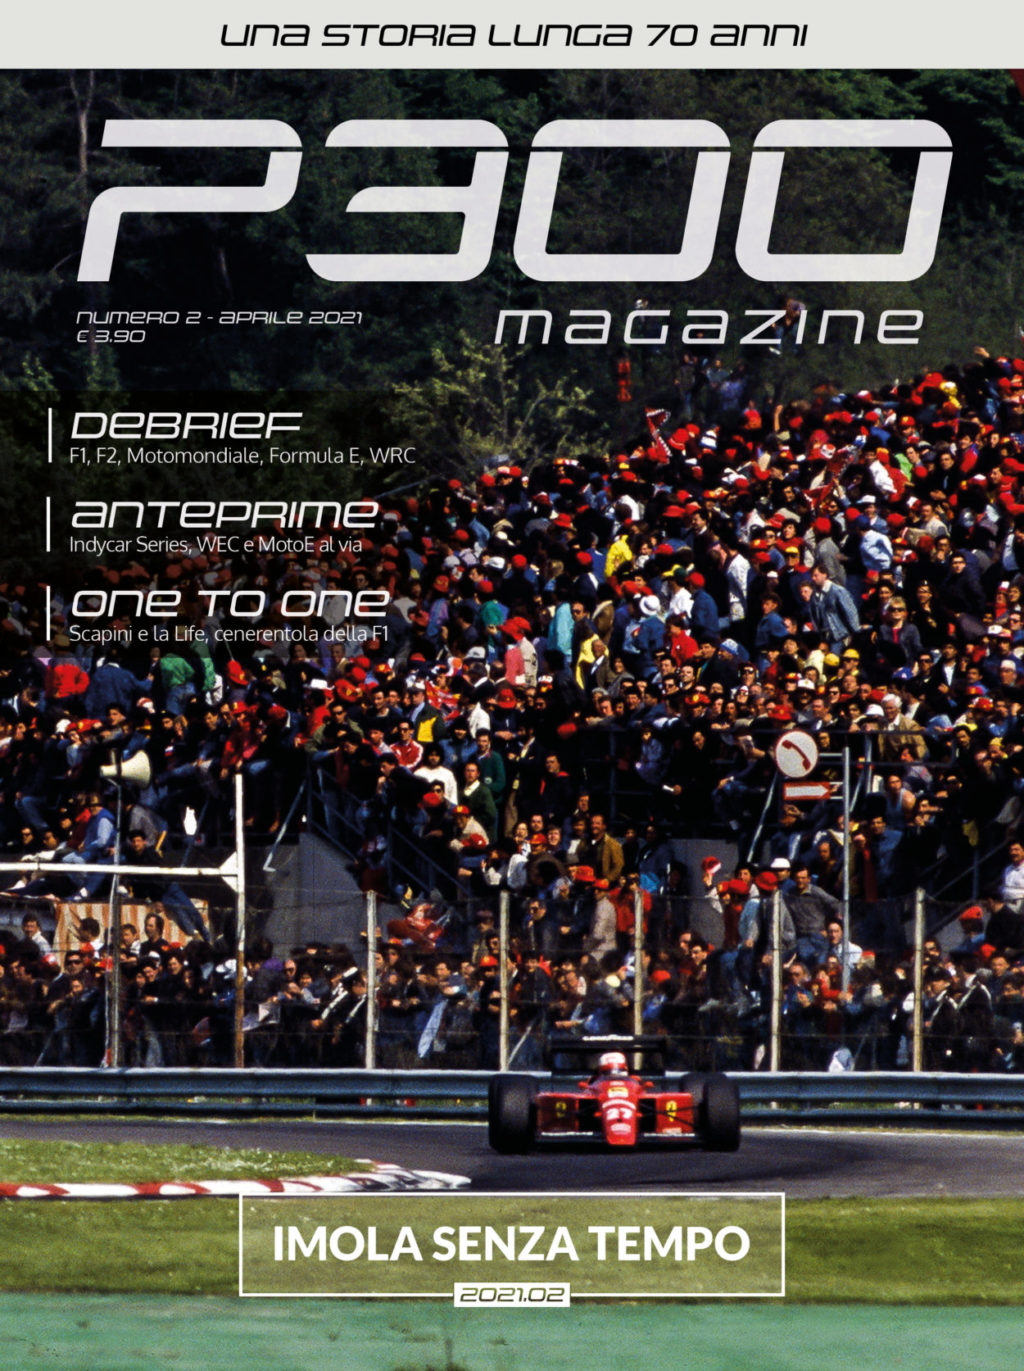 "Imola senza tempo": Il numero 2021.02 di P300 Magazine è online! Acquistalo sul nostro store